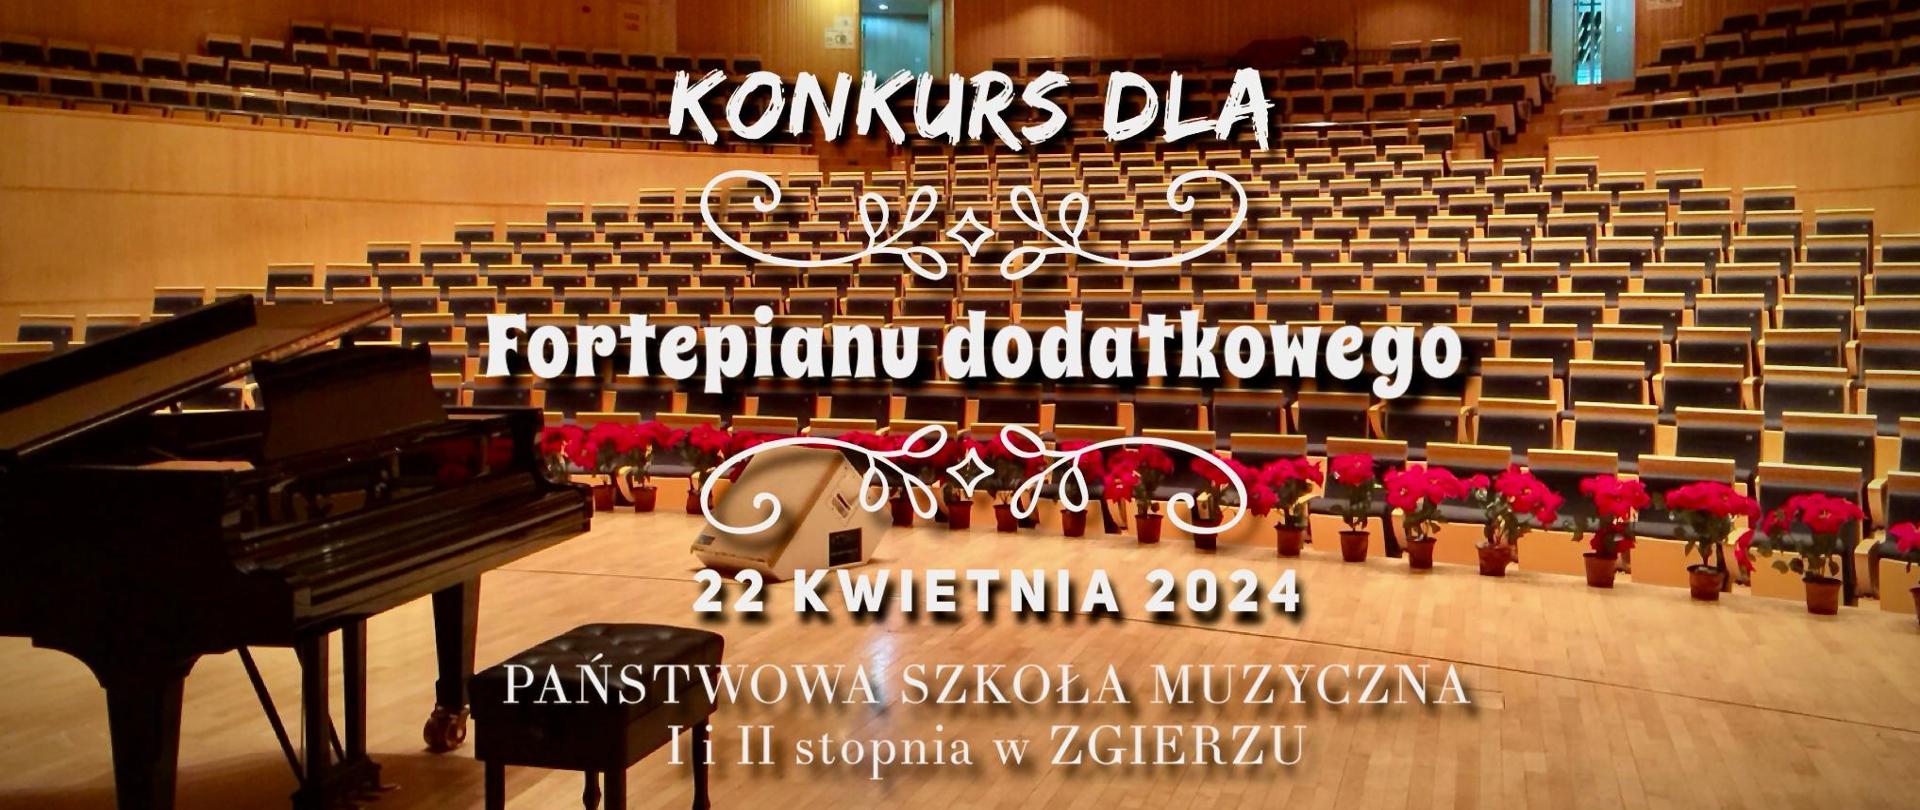 Zdjęcie sali koncertowej z napisem w kolorze białym "Konkurs dla fortepianu dodatkowego 22 kwietnia 2024 Państwowa Szkoła Muzyczna I i II stopnia w Zgierzu".